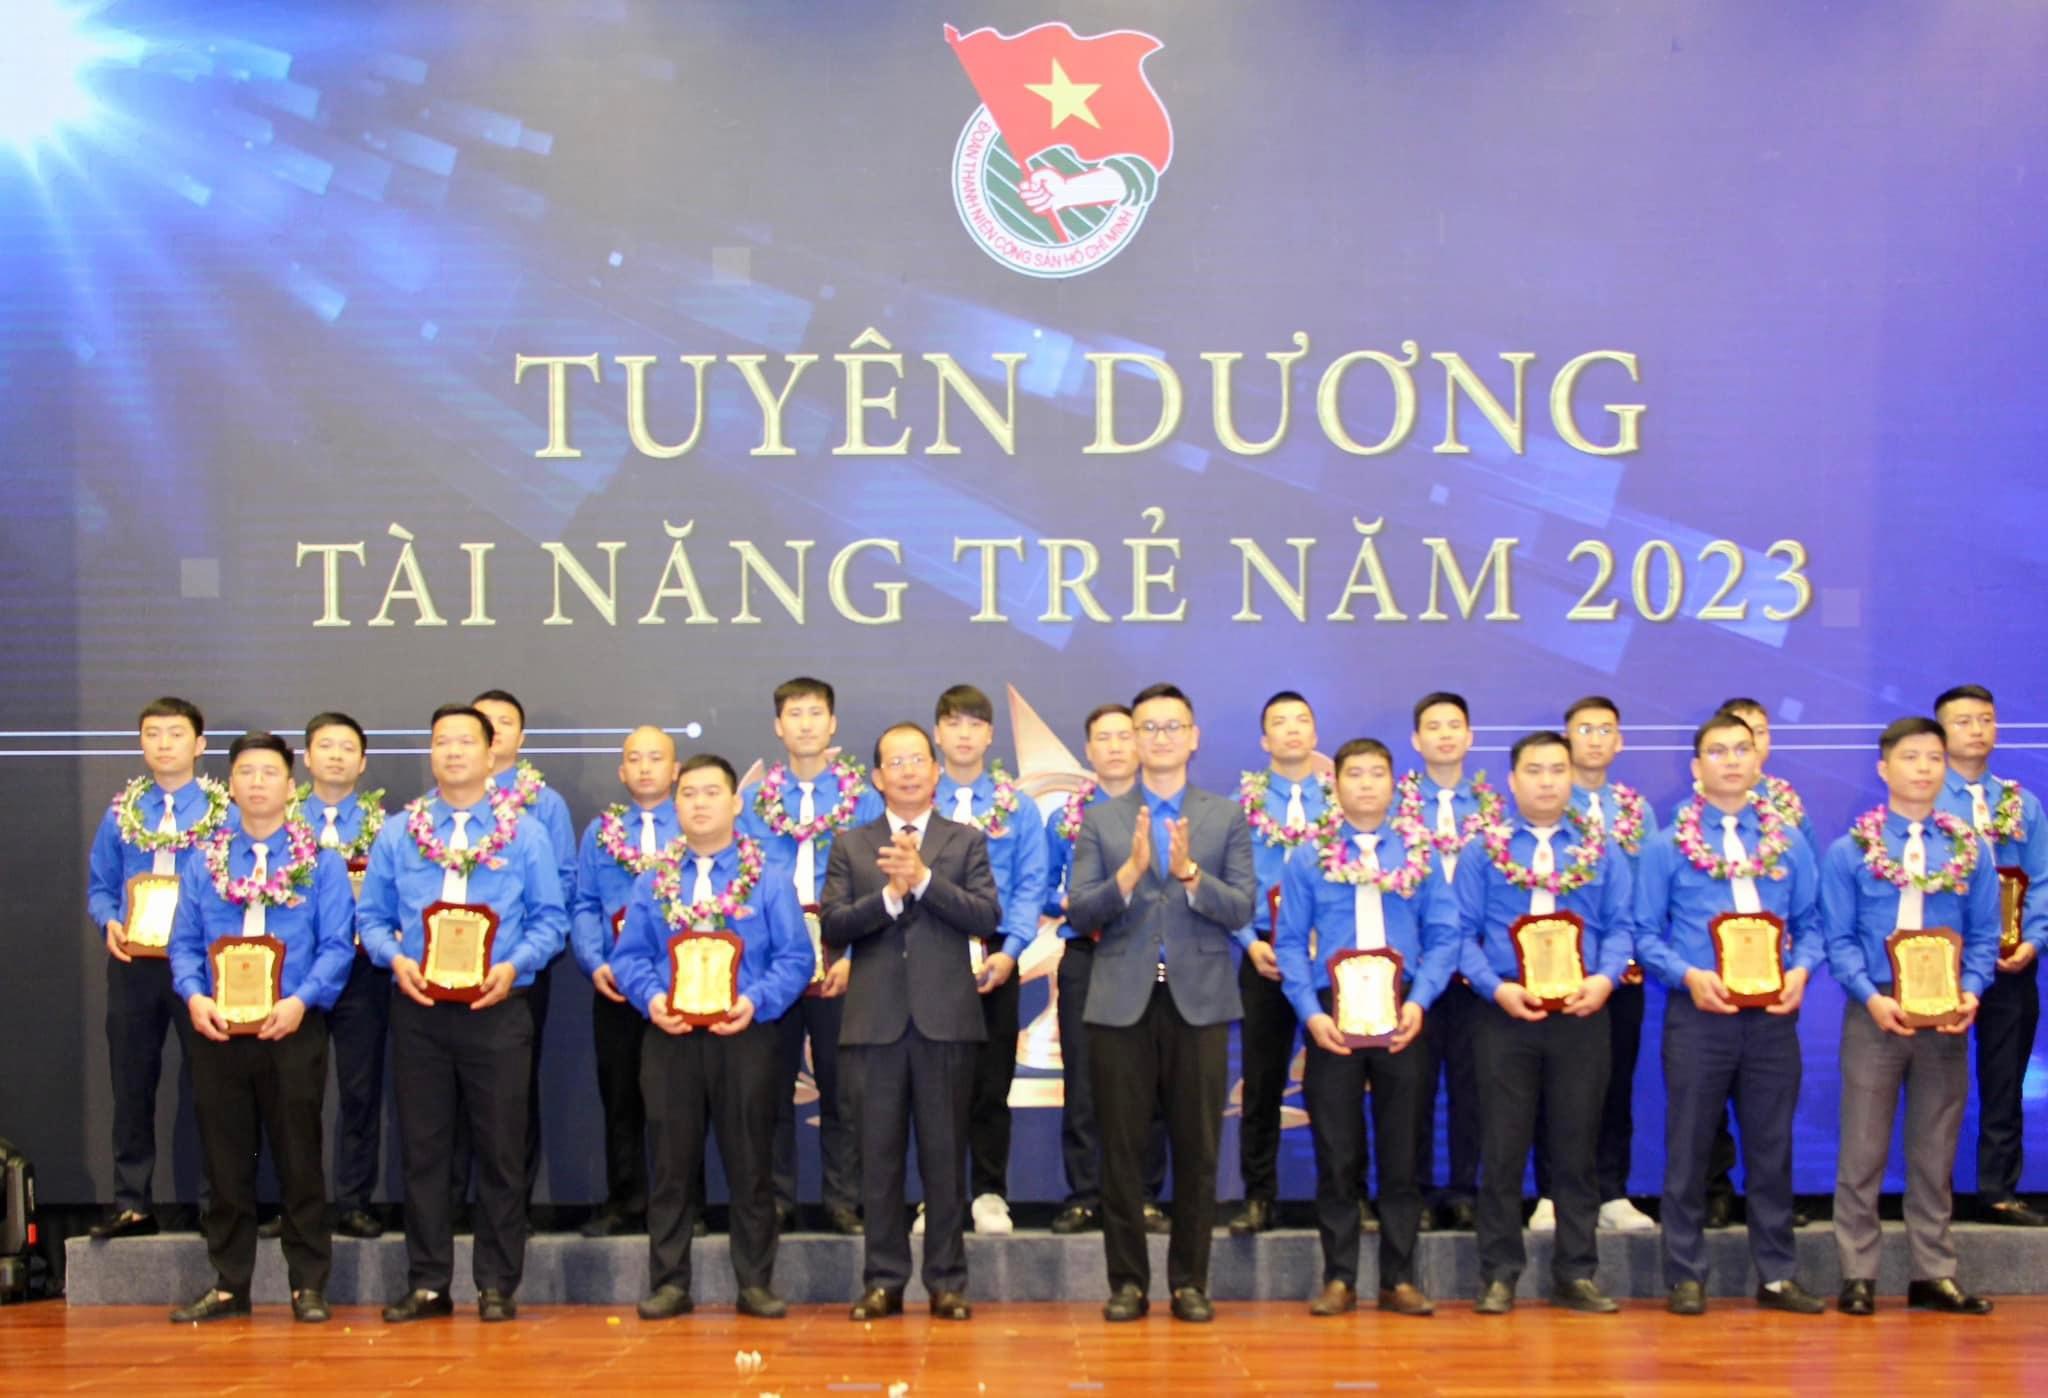 Đoàn Thanh niên Than Khe Chàm vinh dự được Tổng Giám đốc Tập đoàn tặng bằng khen 